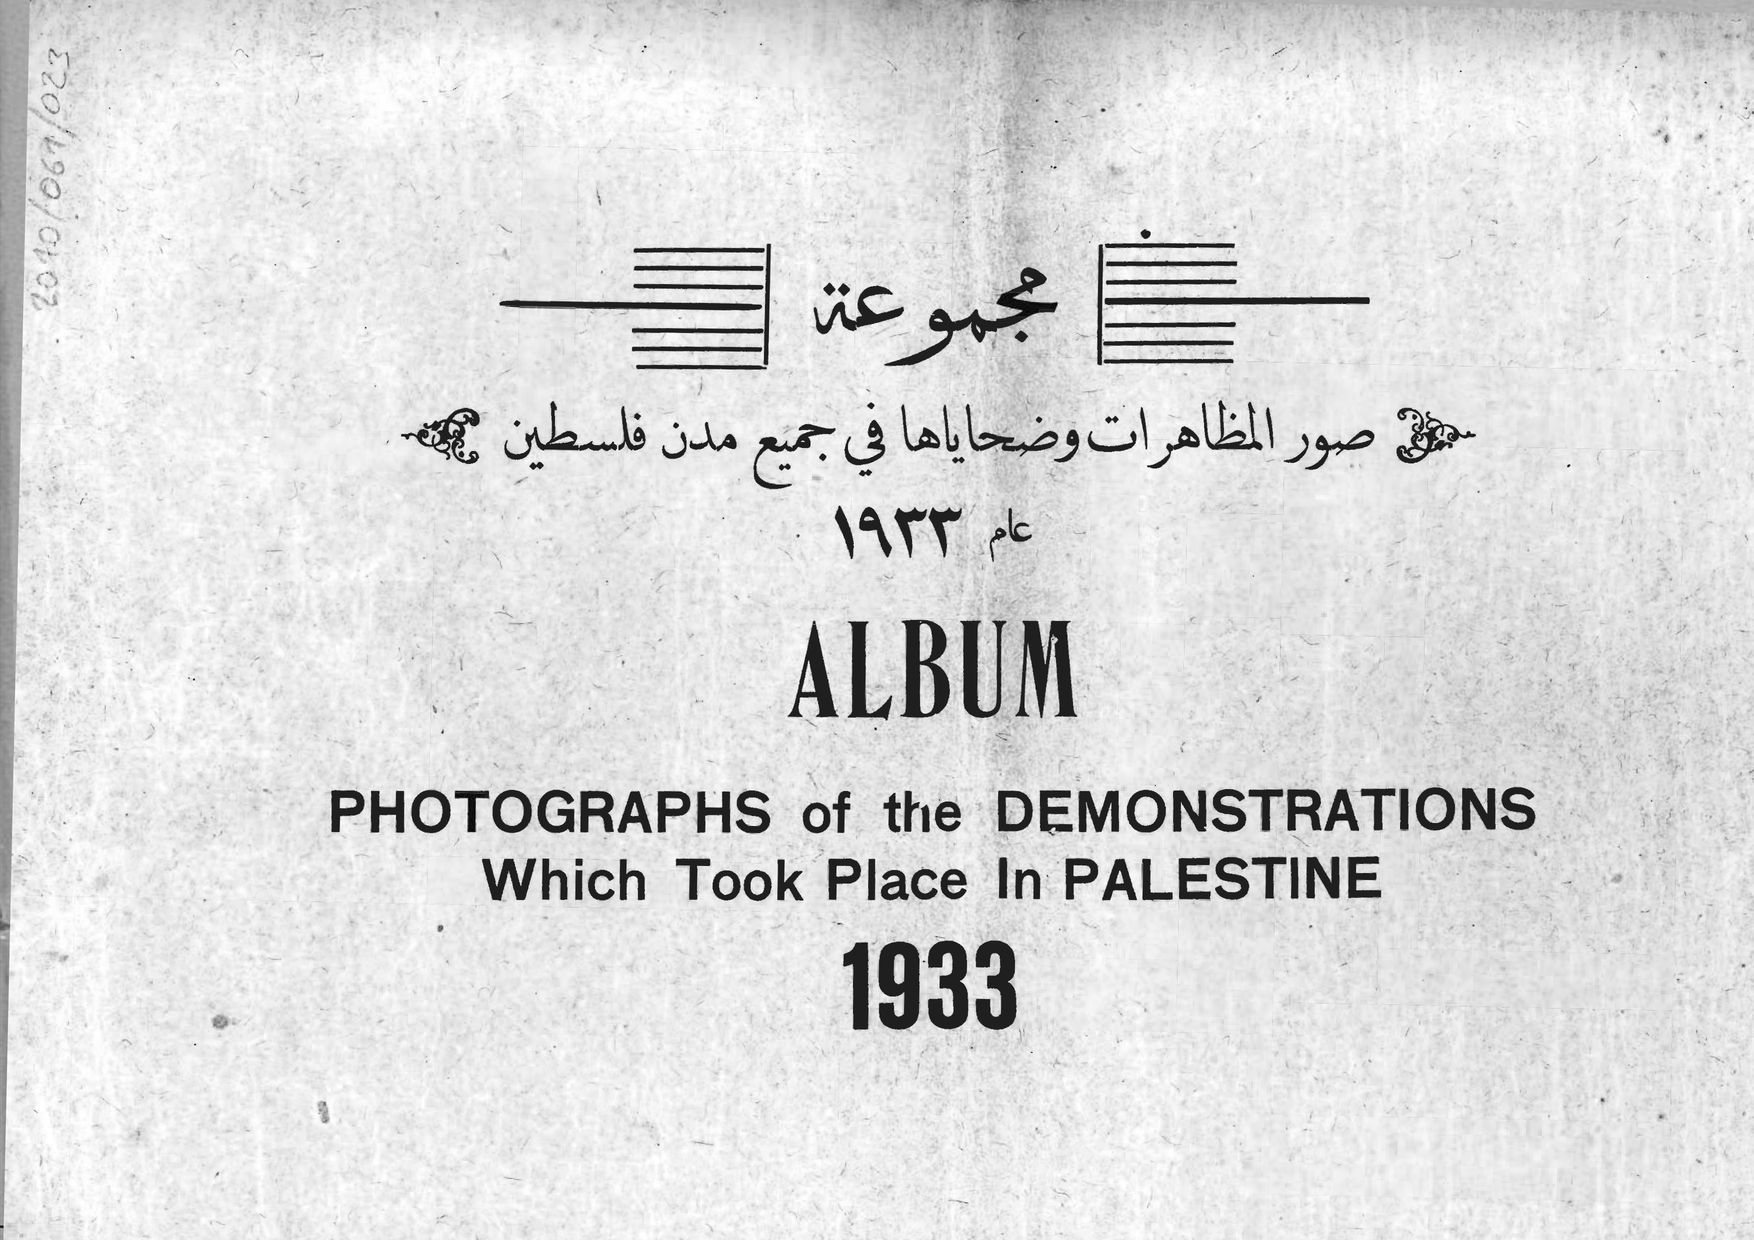 مجموعة صور المظاعرات وضحاياها في جميع مدن فلسطين عام ١٩٣٣ Album photographs of the demonstrations which took place in palestine 1933